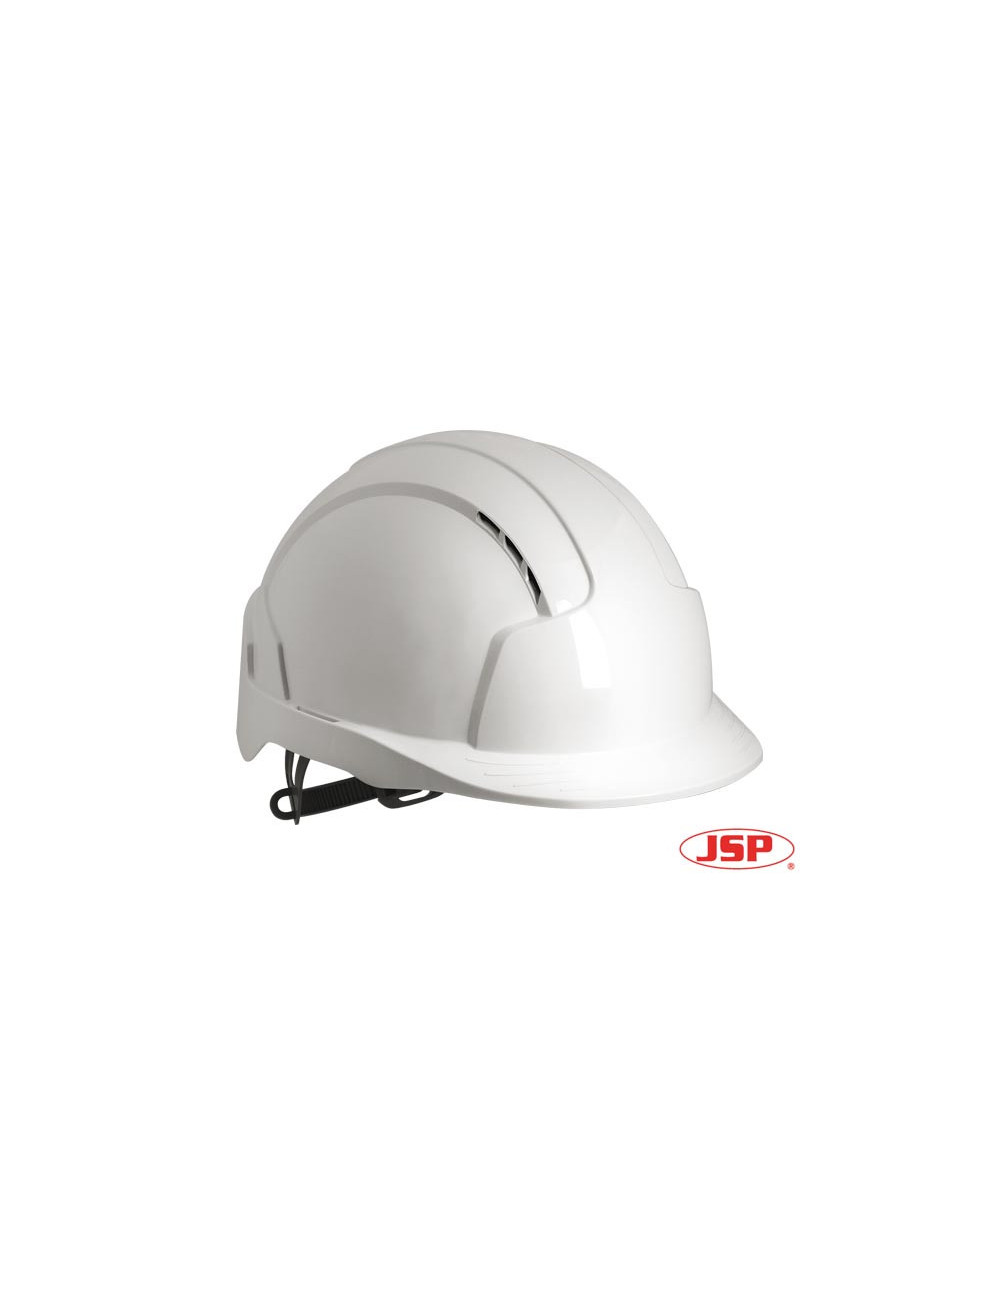 Kas-evolite protective helmet in white Jsp